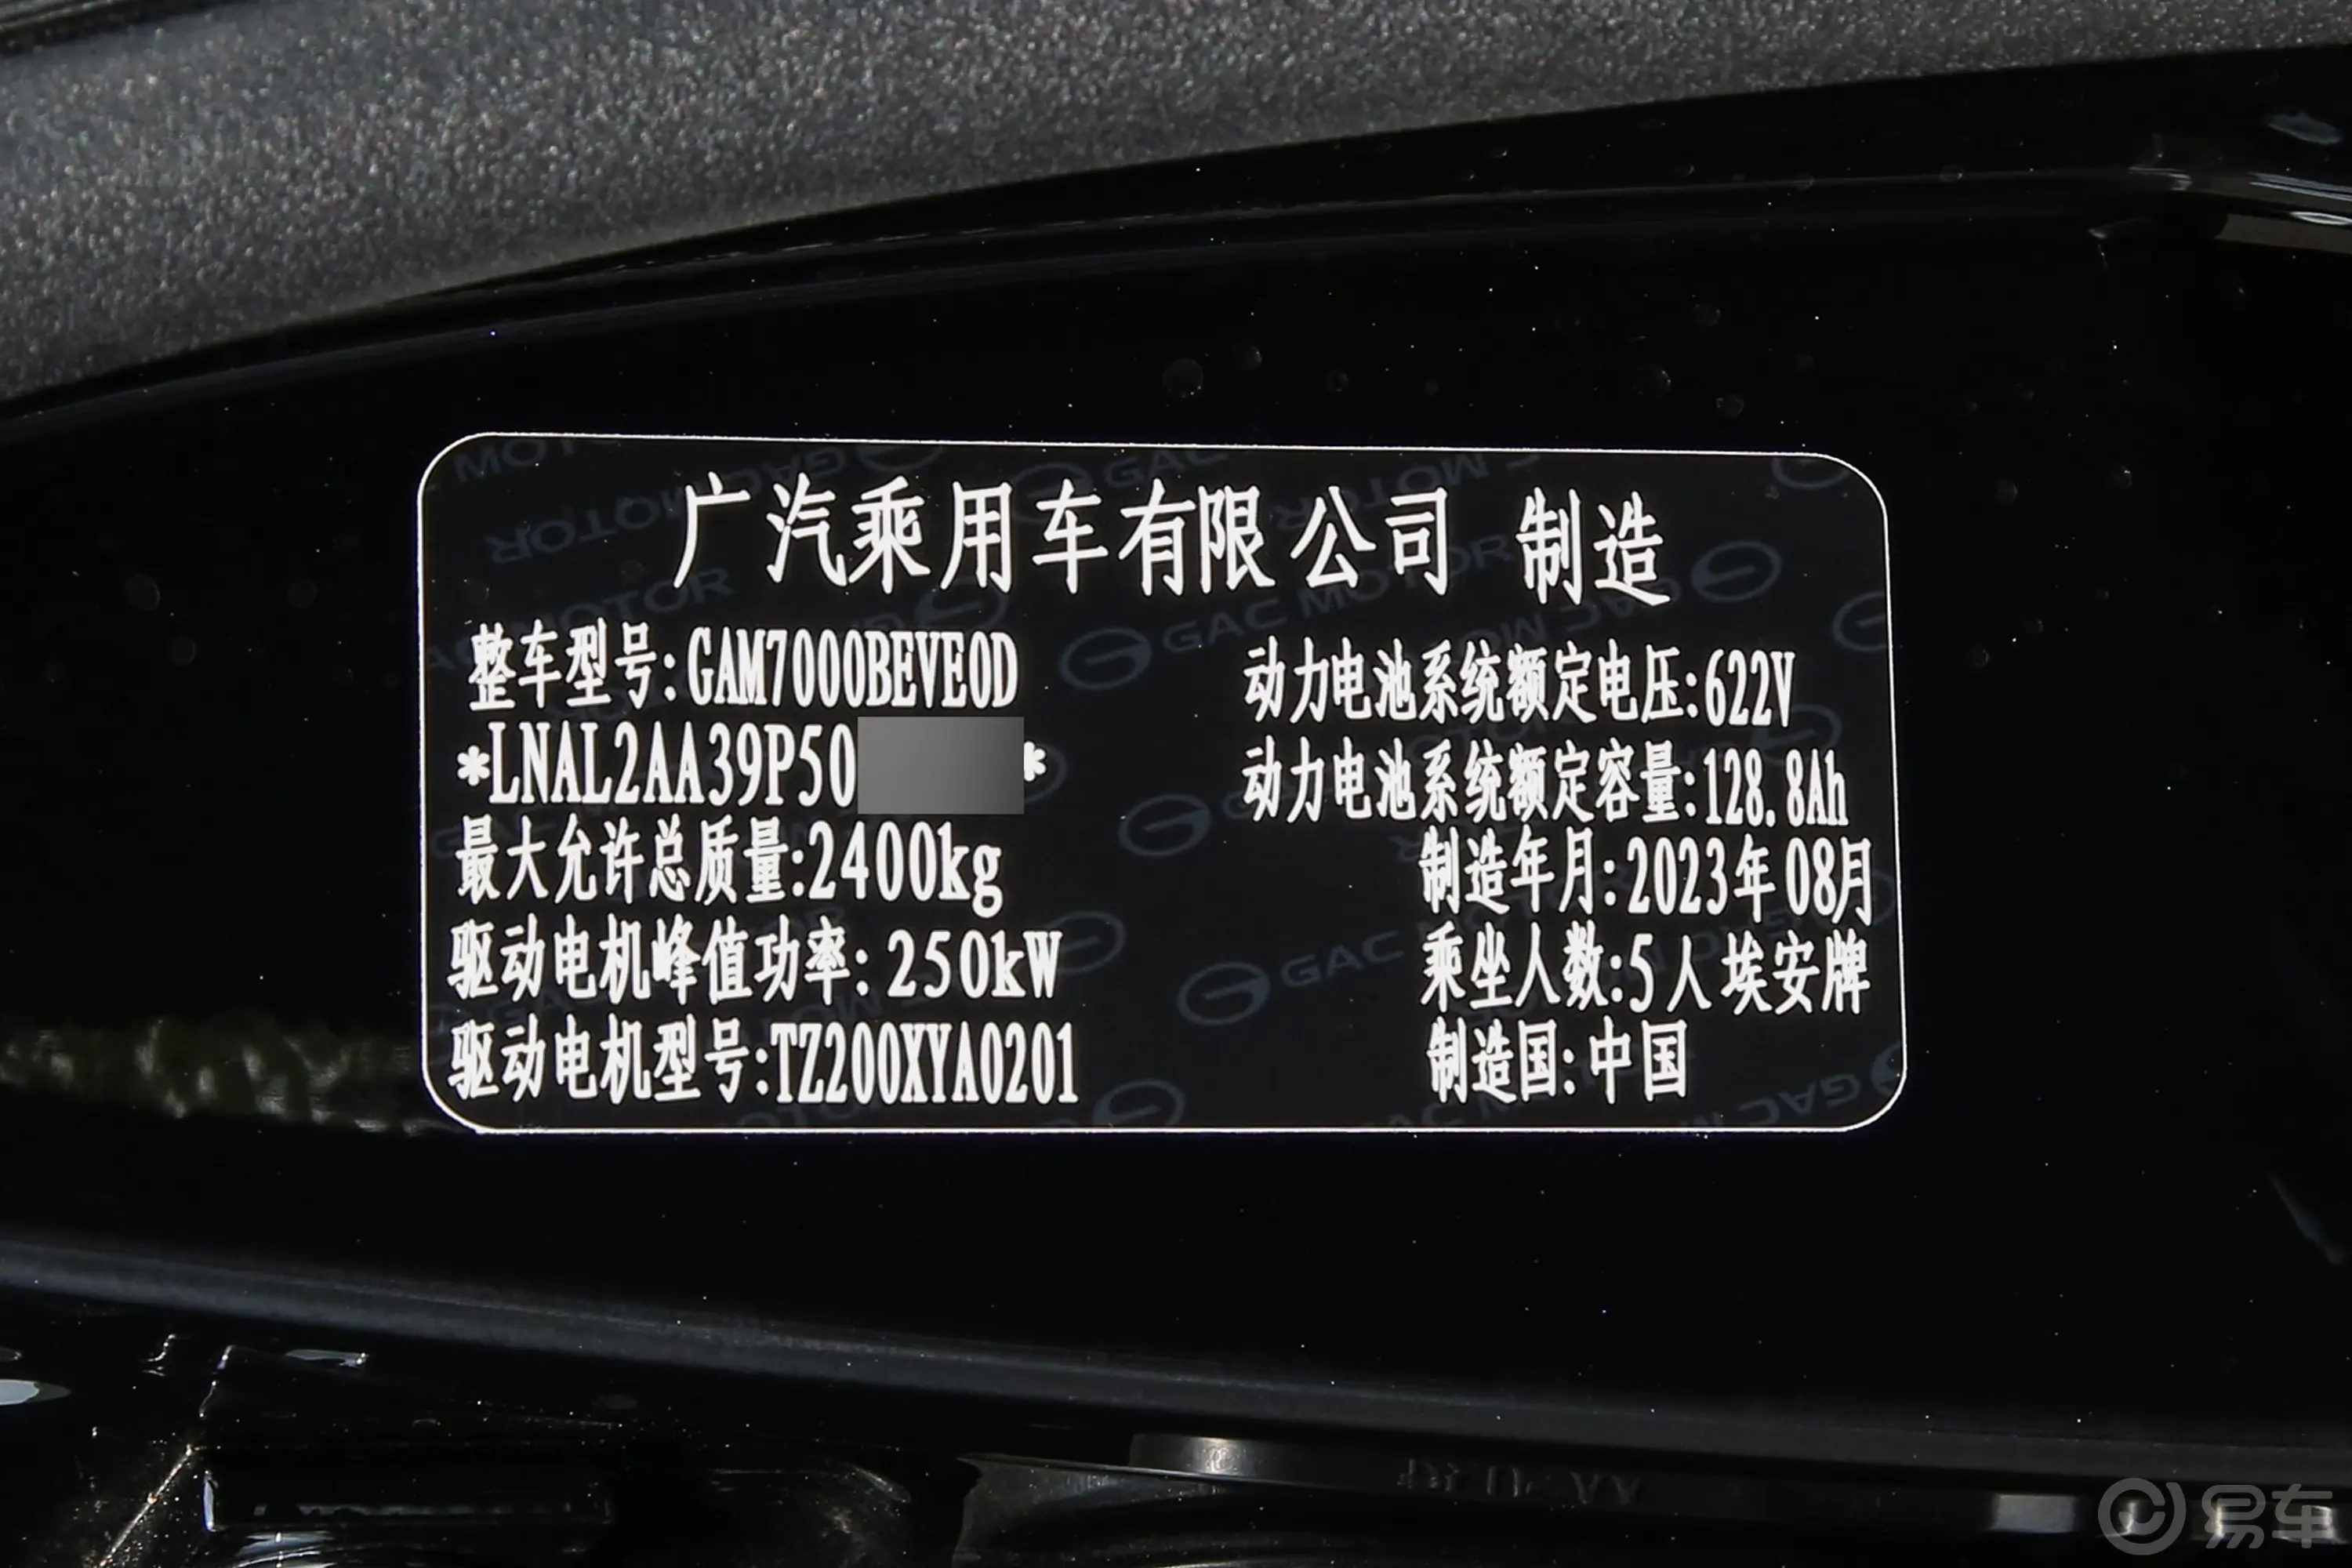 昊铂GT710km 超充版车辆信息铭牌